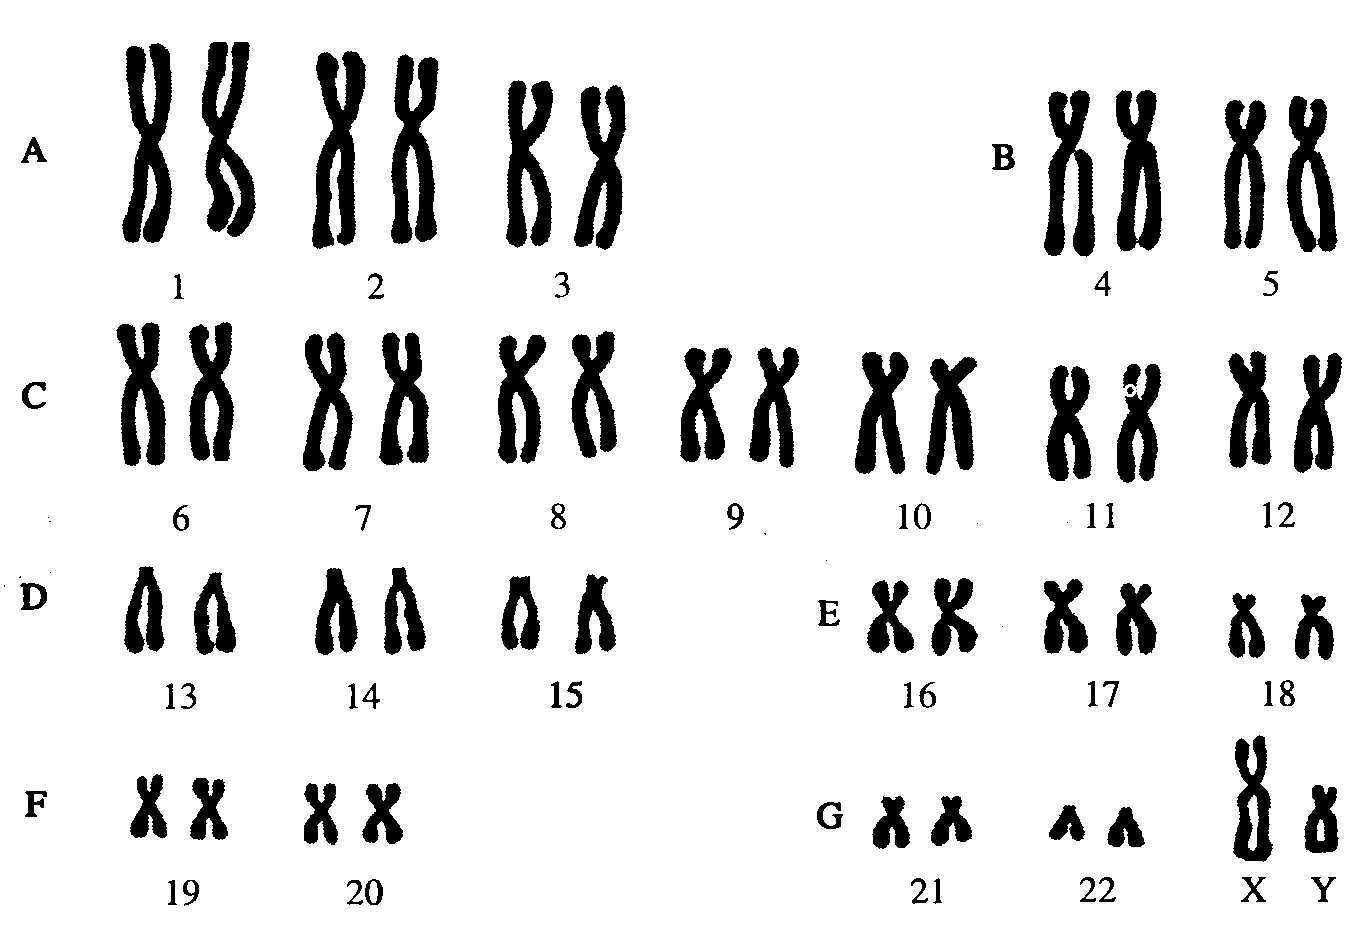 46 хромосом 1. Кариотип человека Денверская классификация хромосом. Кариотип человека классификация хромосом человека. Нормальный кариотип человека 46 хромосом. Кариограмма хромосом здорового человека.